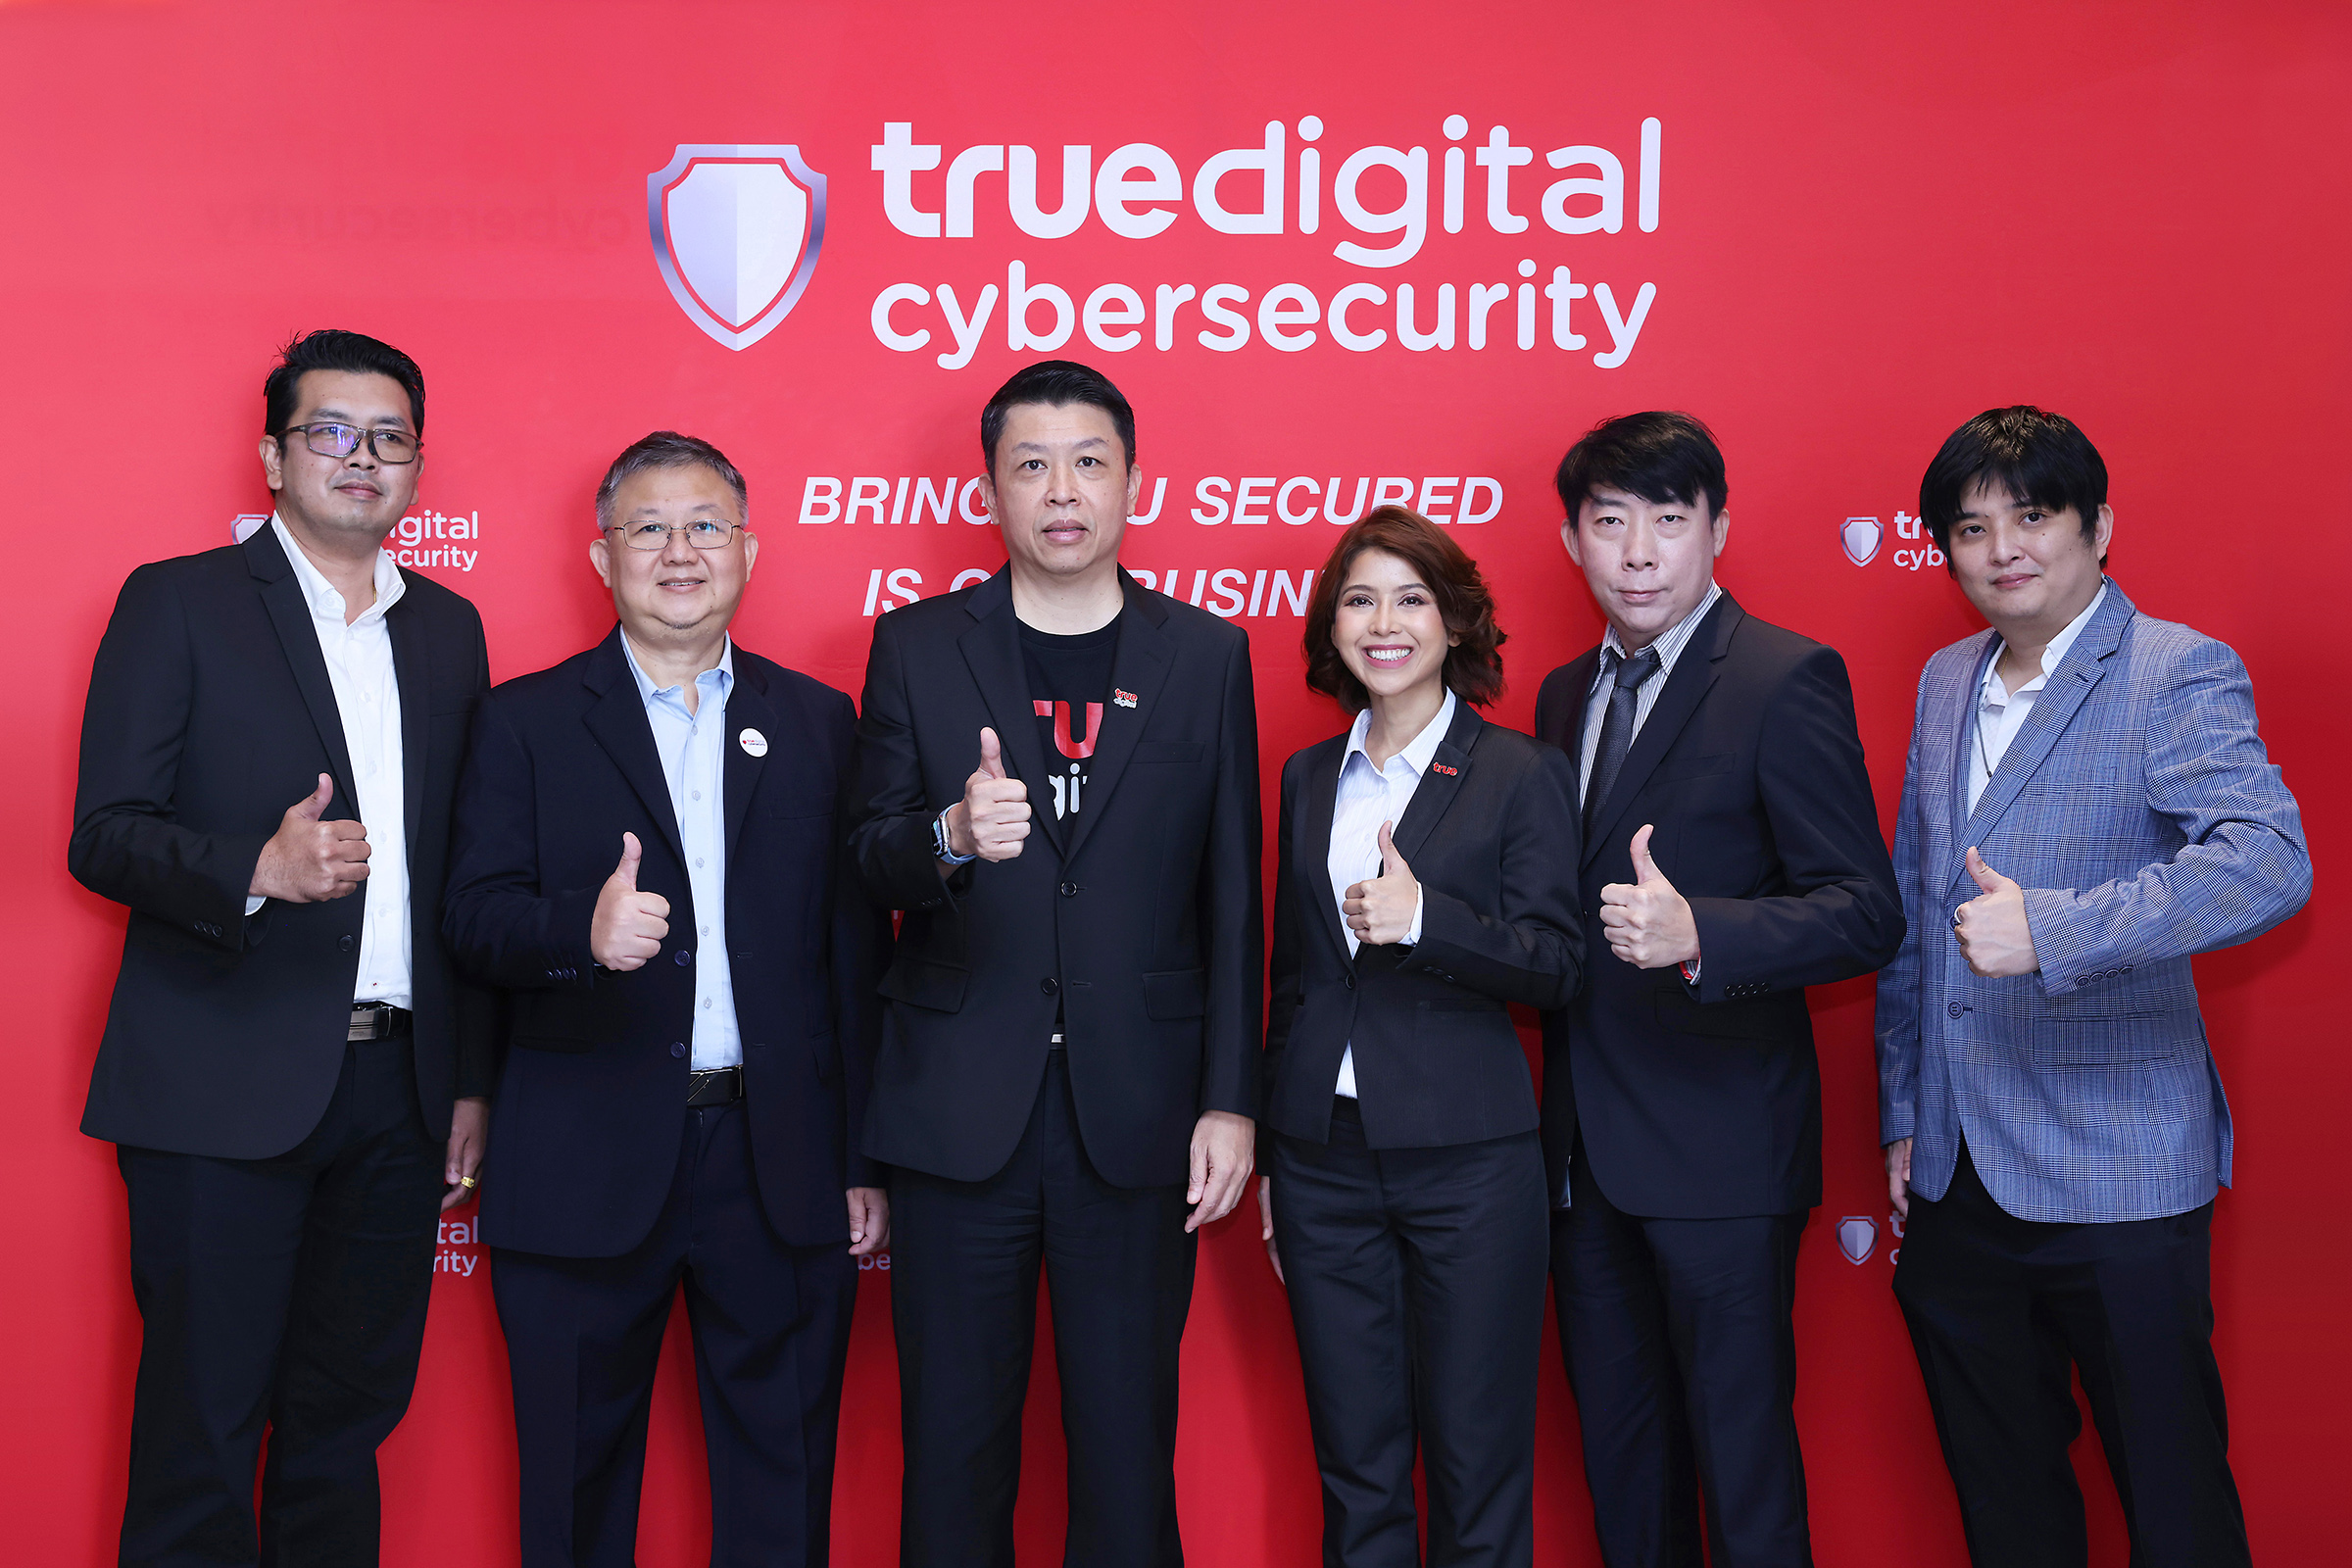 ทรู ดิจิทัล จัดสัมมนา Driving Cybersecurity Journey Of Your Business with True Digital เสริมความรู้ให้ลูกค้าองค์กร ยกระดับความปลอดภัยด้านไซเบอร์